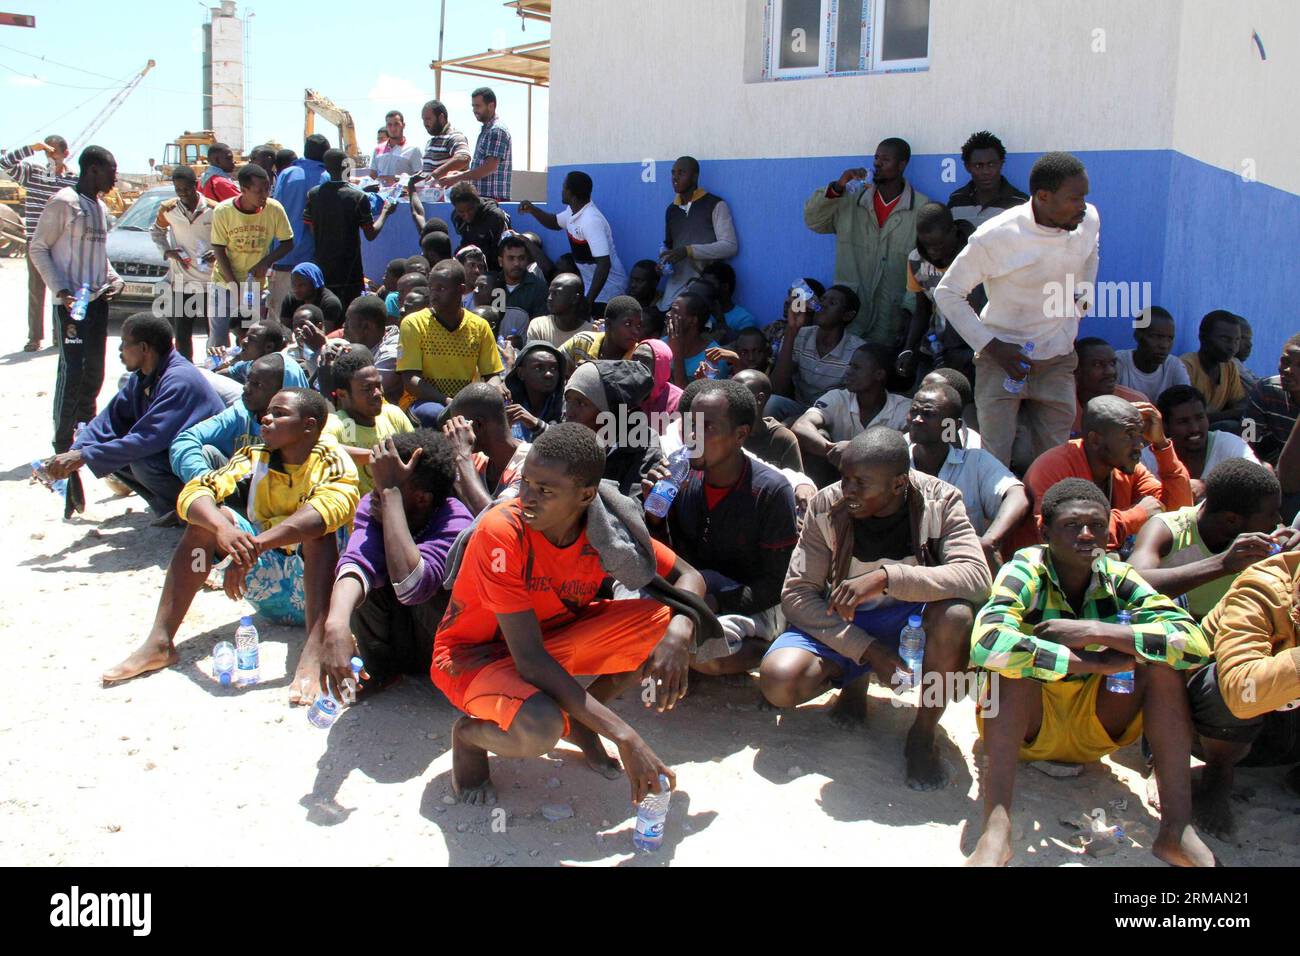 (140717) -- QARA BOLLE, 17 luglio 2014 (Xinhua) -- alcuni immigrati clandestini siedono a terra dopo essere stati salvati al largo della costa di Qara bolle, in Libia, il 17 luglio. La guardia costiera libica ha salvato circa 100 immigrati clandestini a circa 40 chilometri al largo della costa di Qara bolle. La Libia è da tempo un punto di transito per i migranti che cercano di raggiungere Malta, l'Italia e altri luoghi in Europa a causa della sua vicinanza e del controllo delle frontiere relativamente lento. (Xinhua/Hamza Turkia) LIBIA-QARA BOLLE-IMMIGRATI CLANDESTINI PUBLICATIONxNOTxINxCHN Qara bolle 17 luglio 2014 XINHUA alcuni immigrati clandestini siedono A terra dopo B. Foto Stock